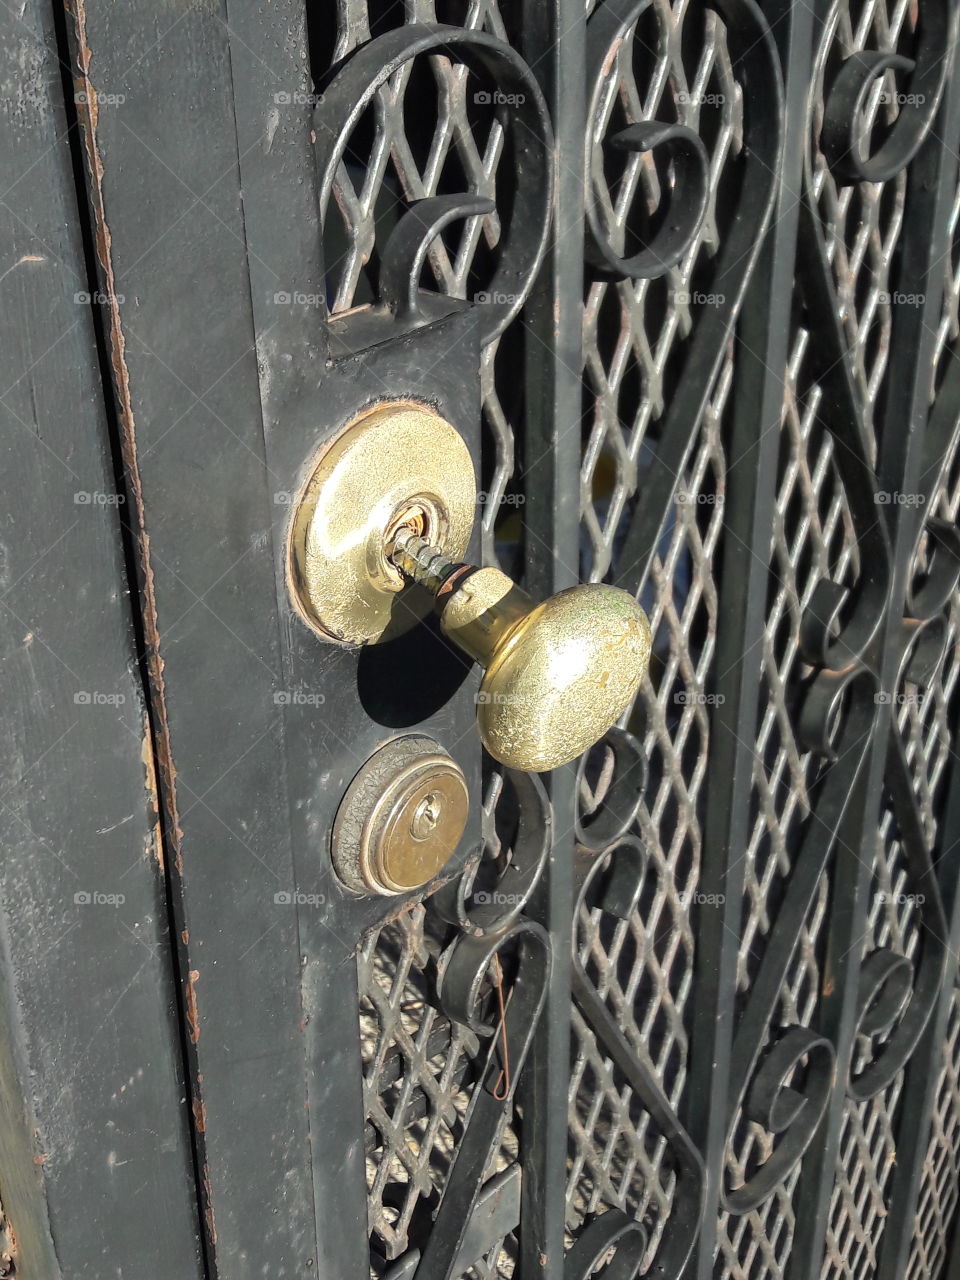 A broken door knob and lock in need of repair.